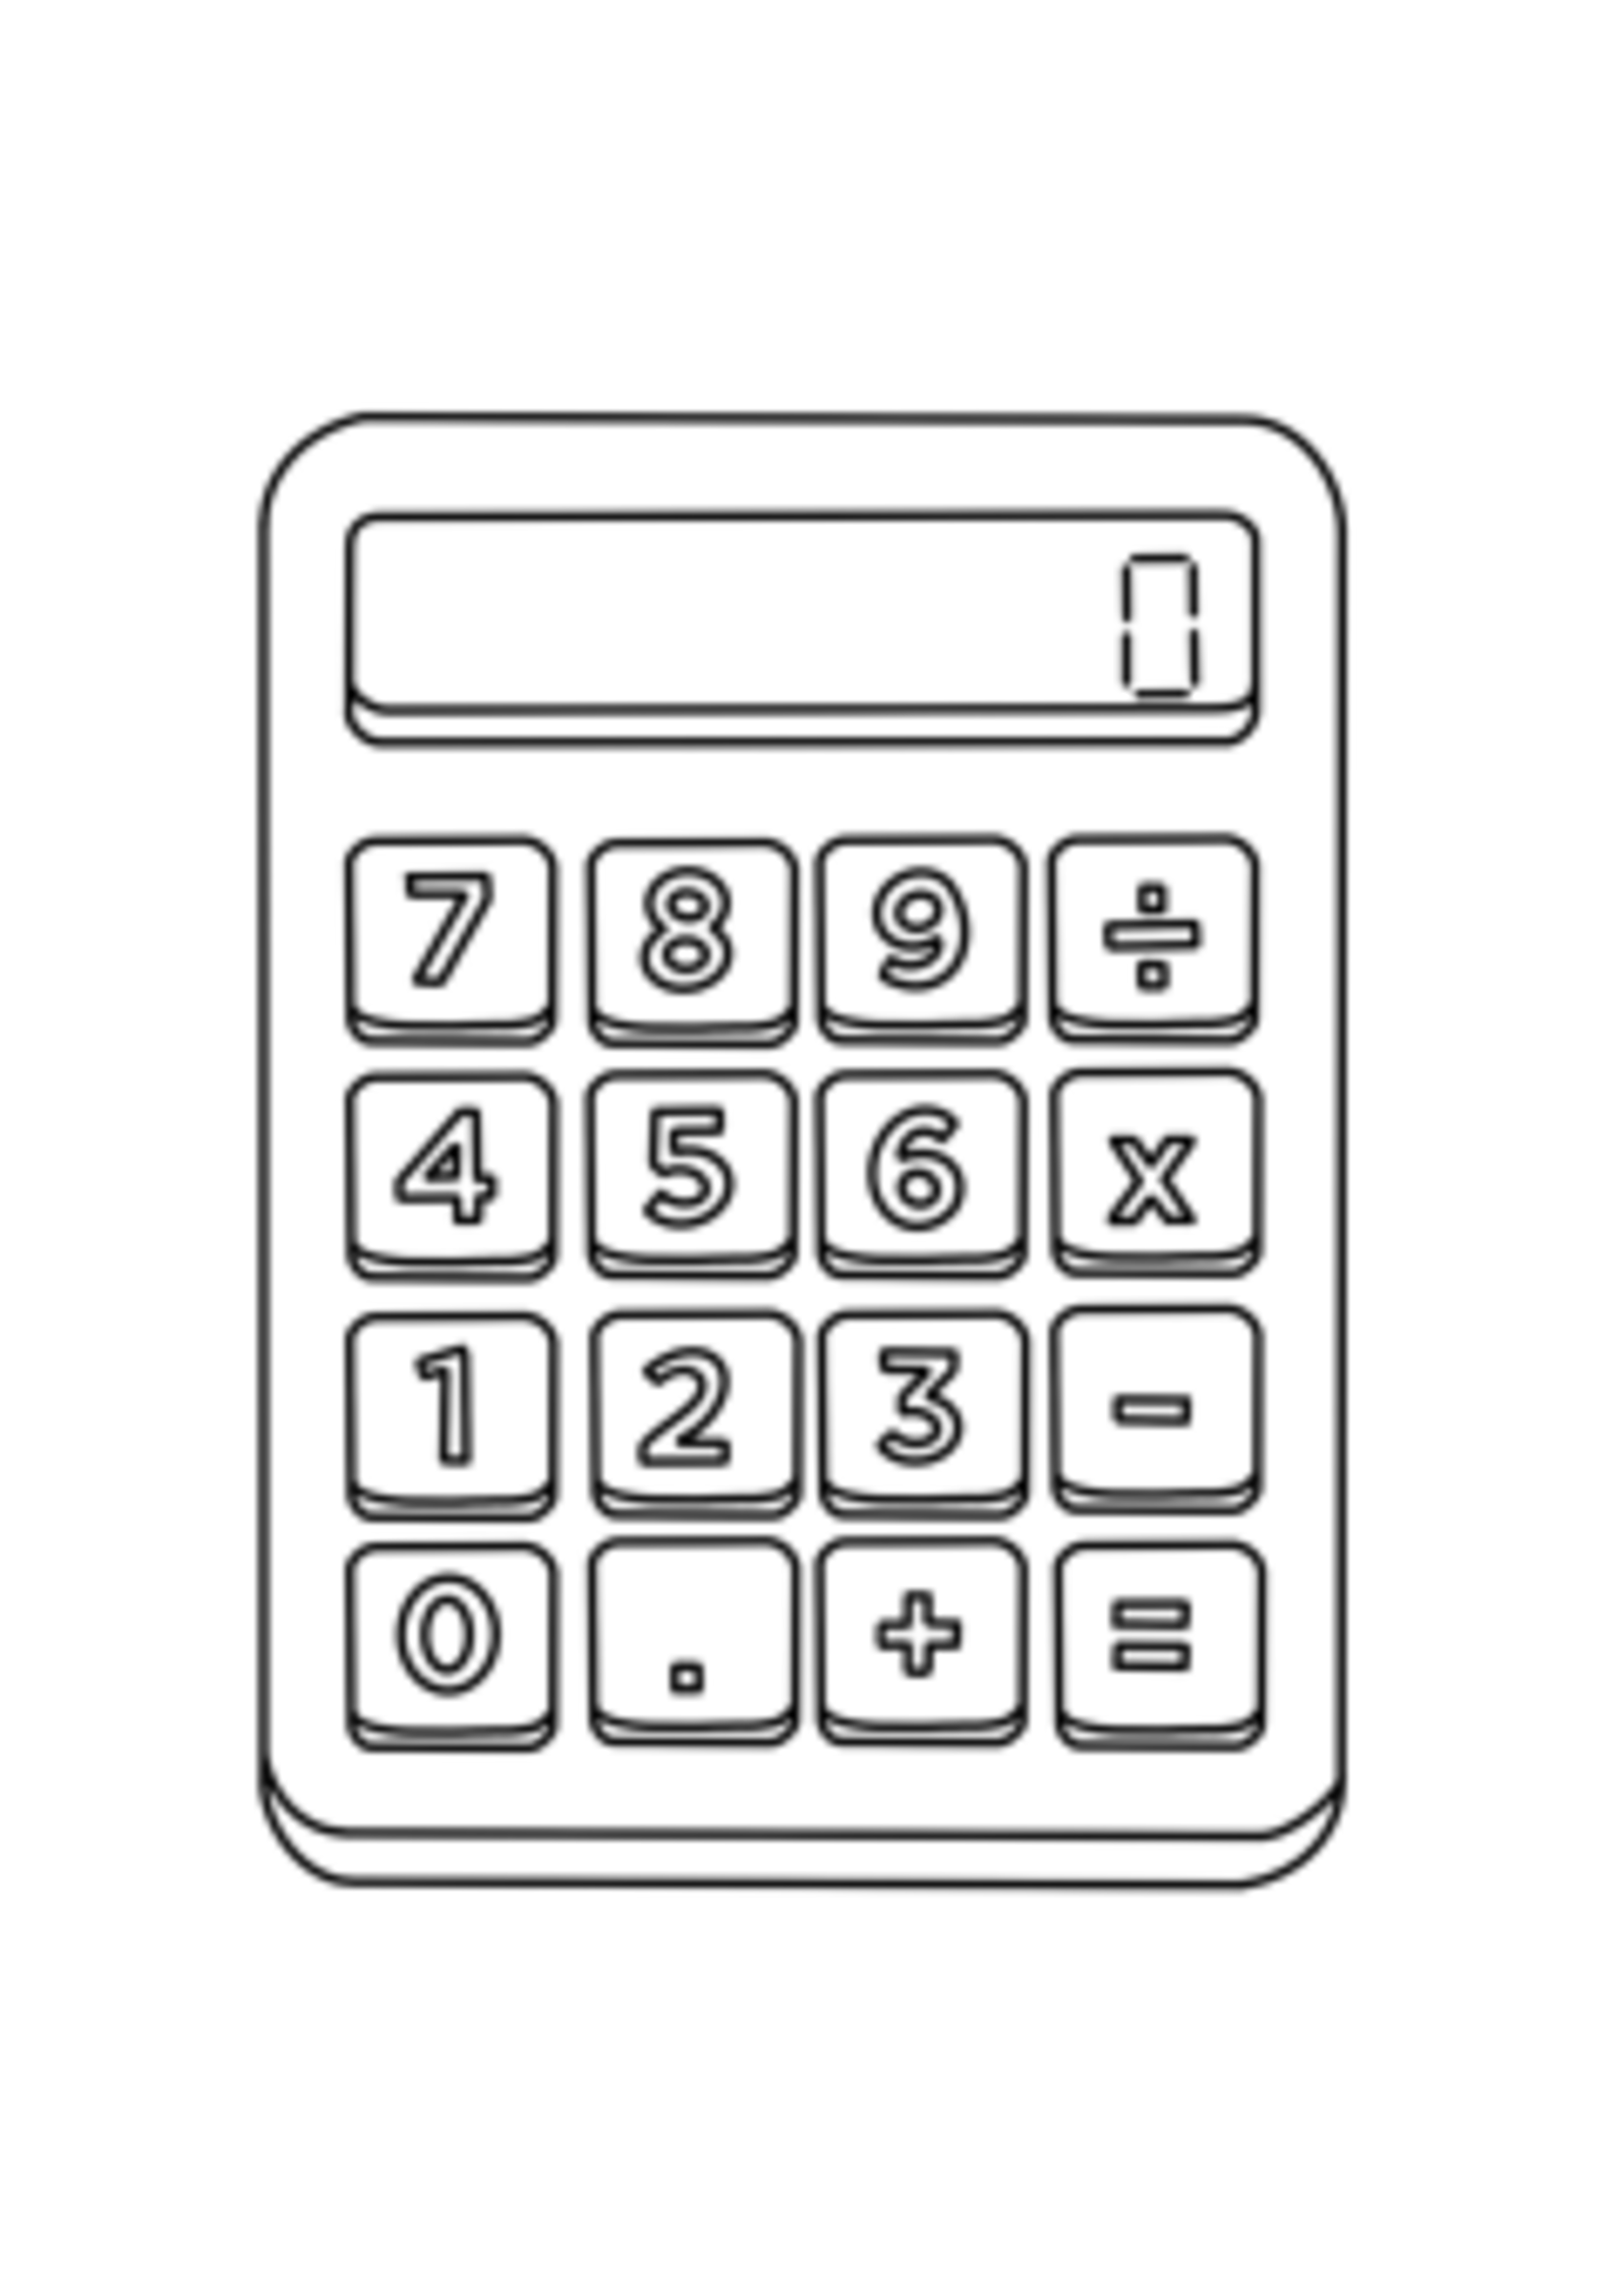 NON-UNIFORM CALCULATOR - Soccer Kiosk Calculator